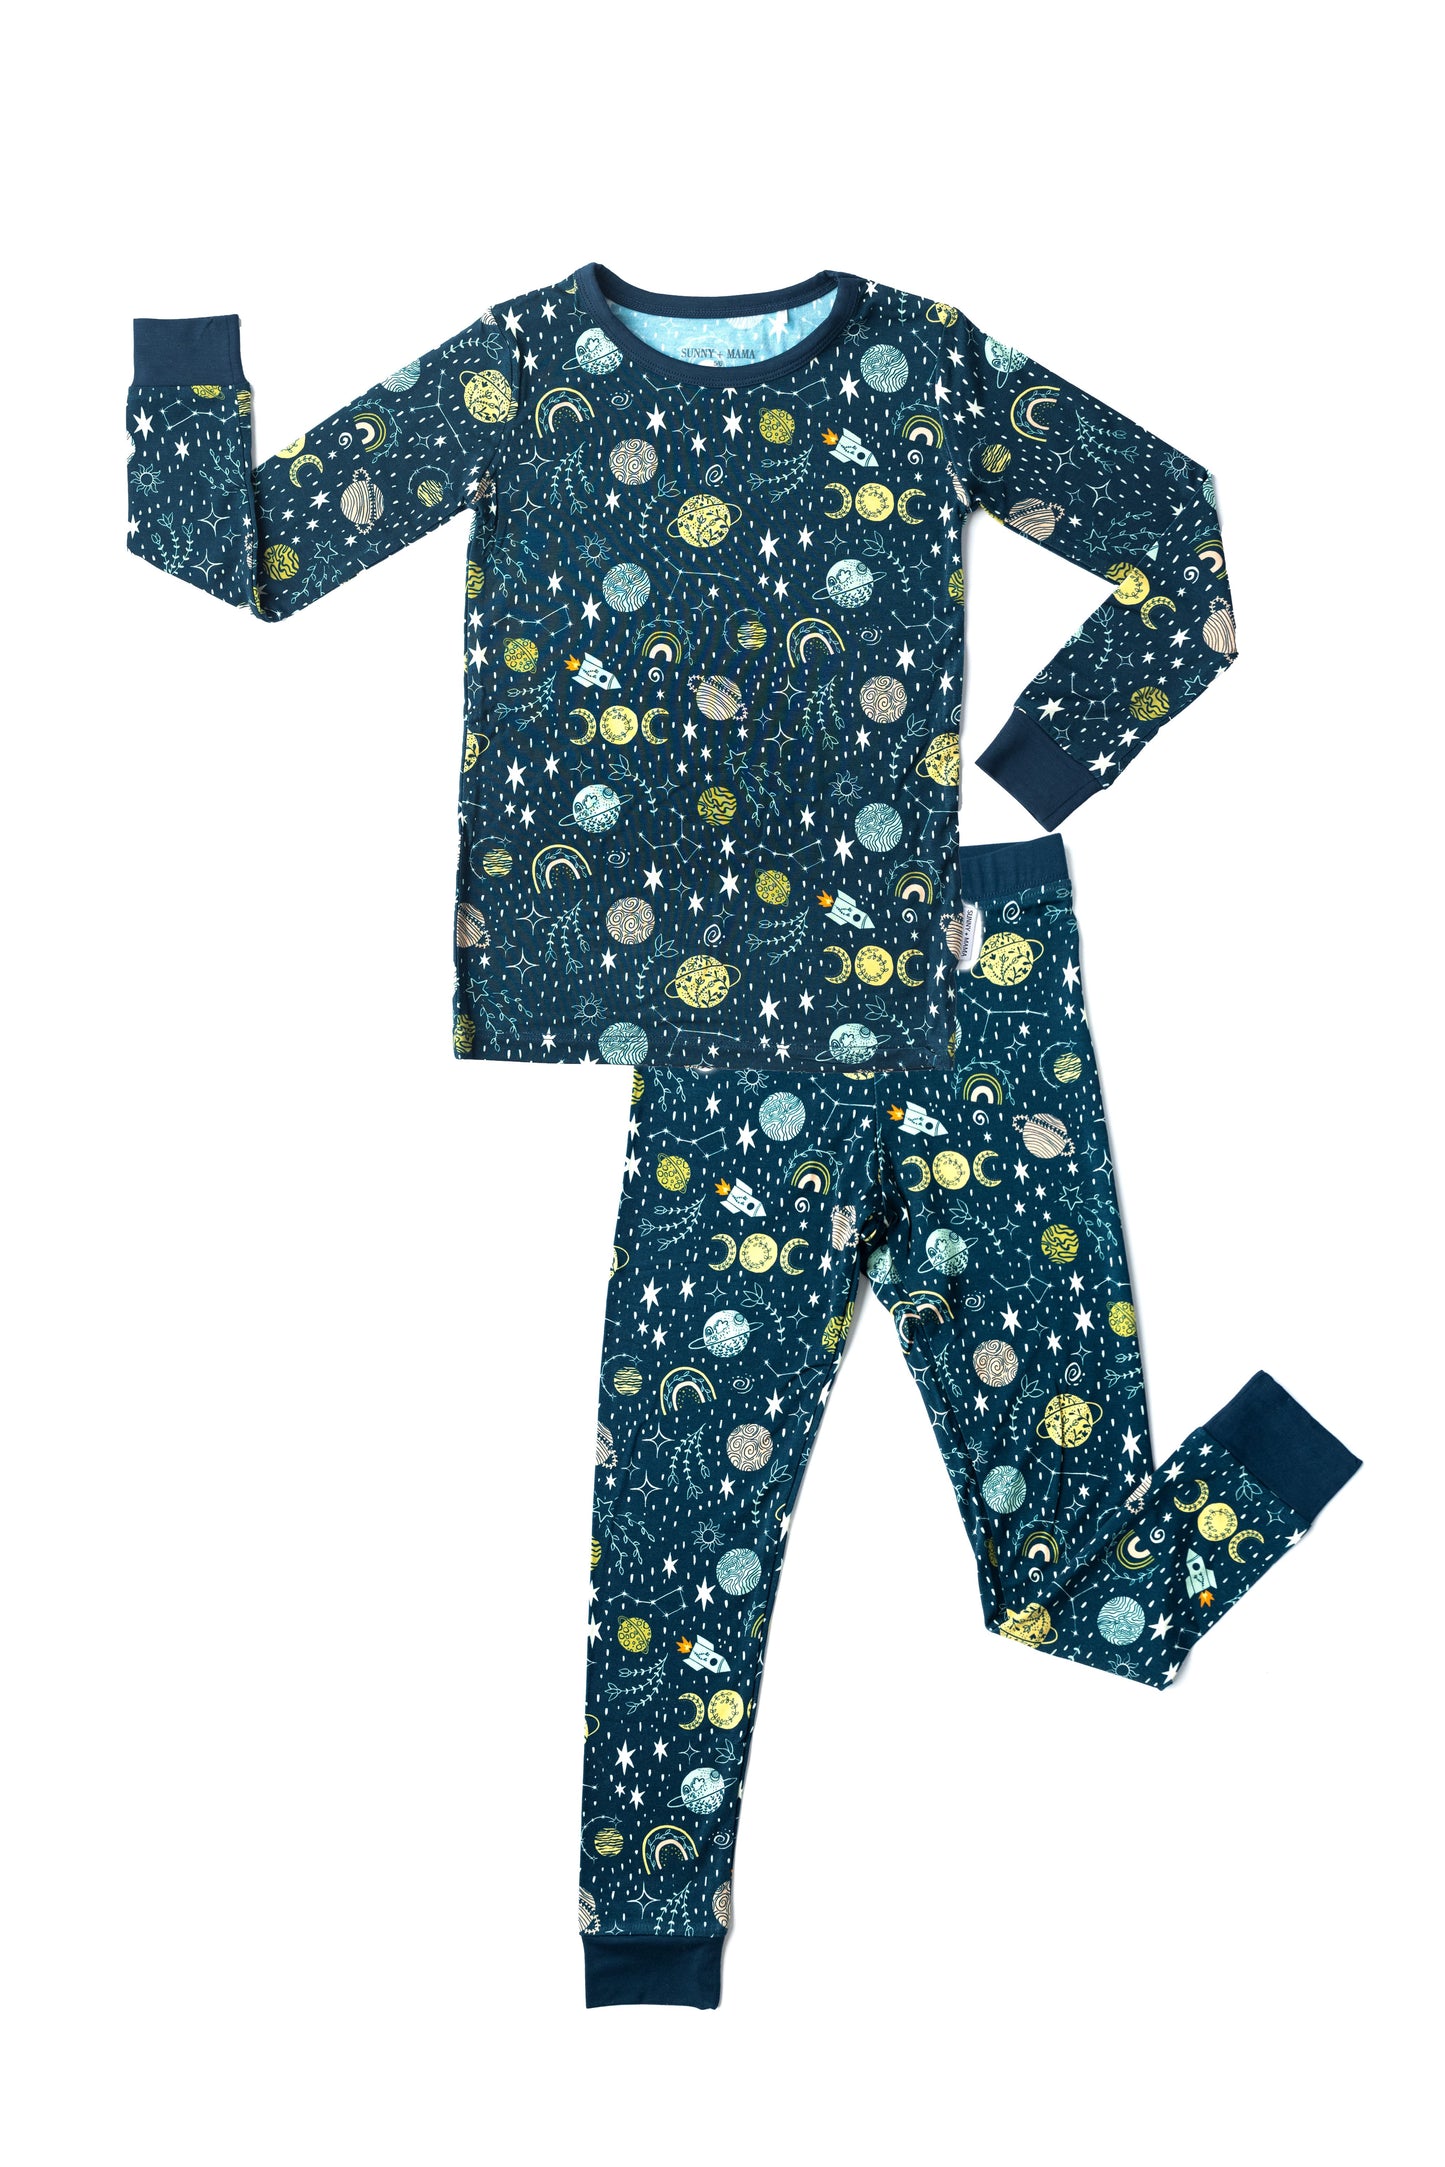 Goodnight Meteorite Two-Piece Pajama Set Navy